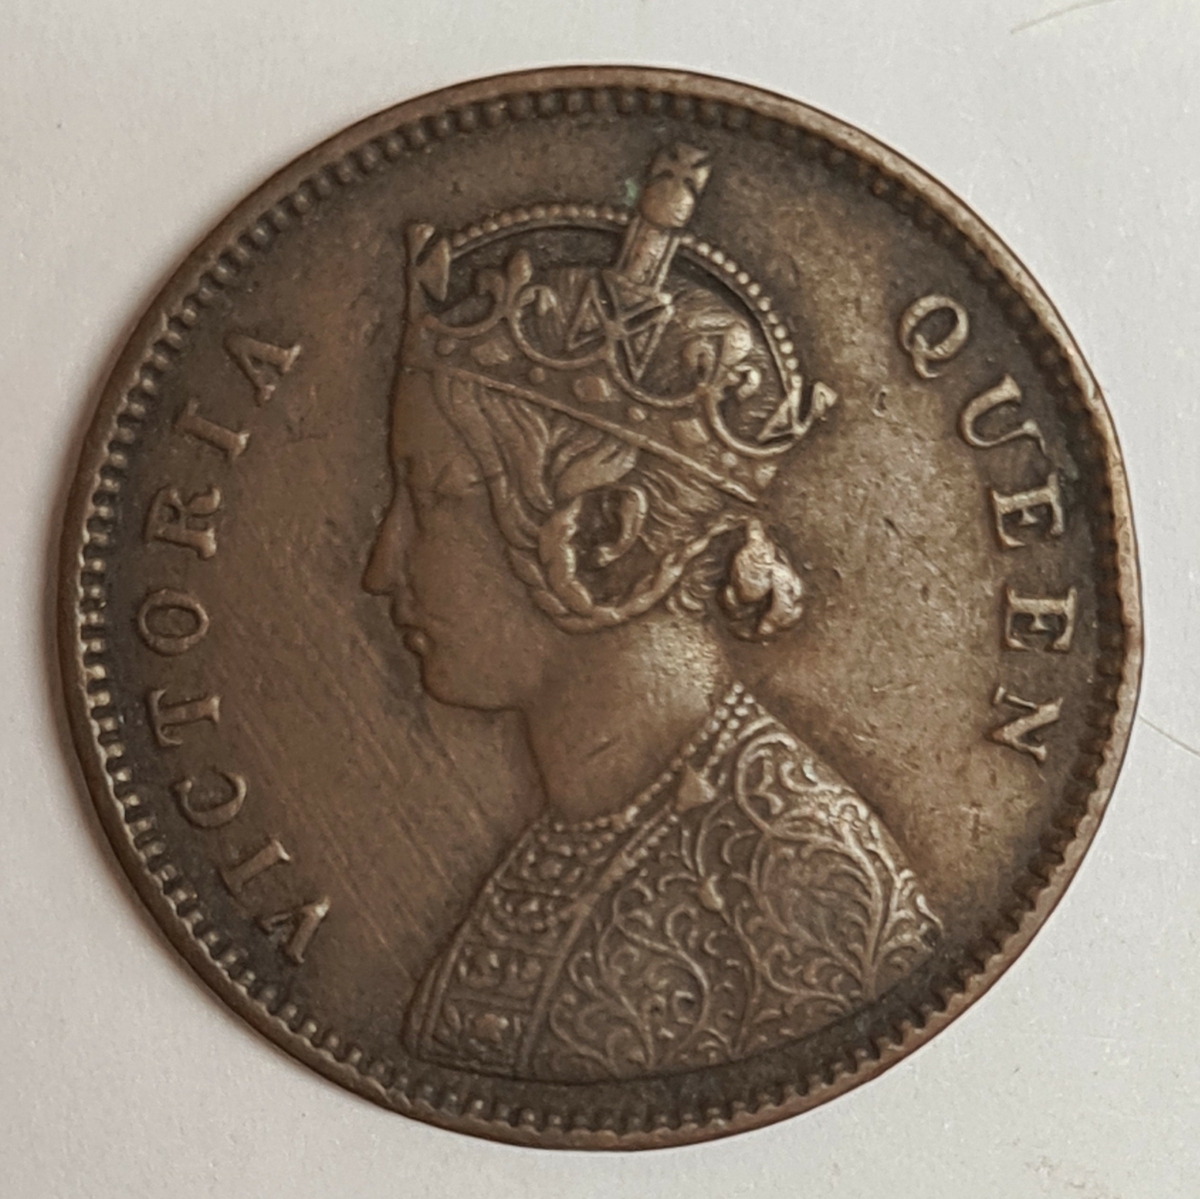 Två mynt från Indien/Storbritanien.
1/4 Anna, 1862
1/4 Anna, 1862